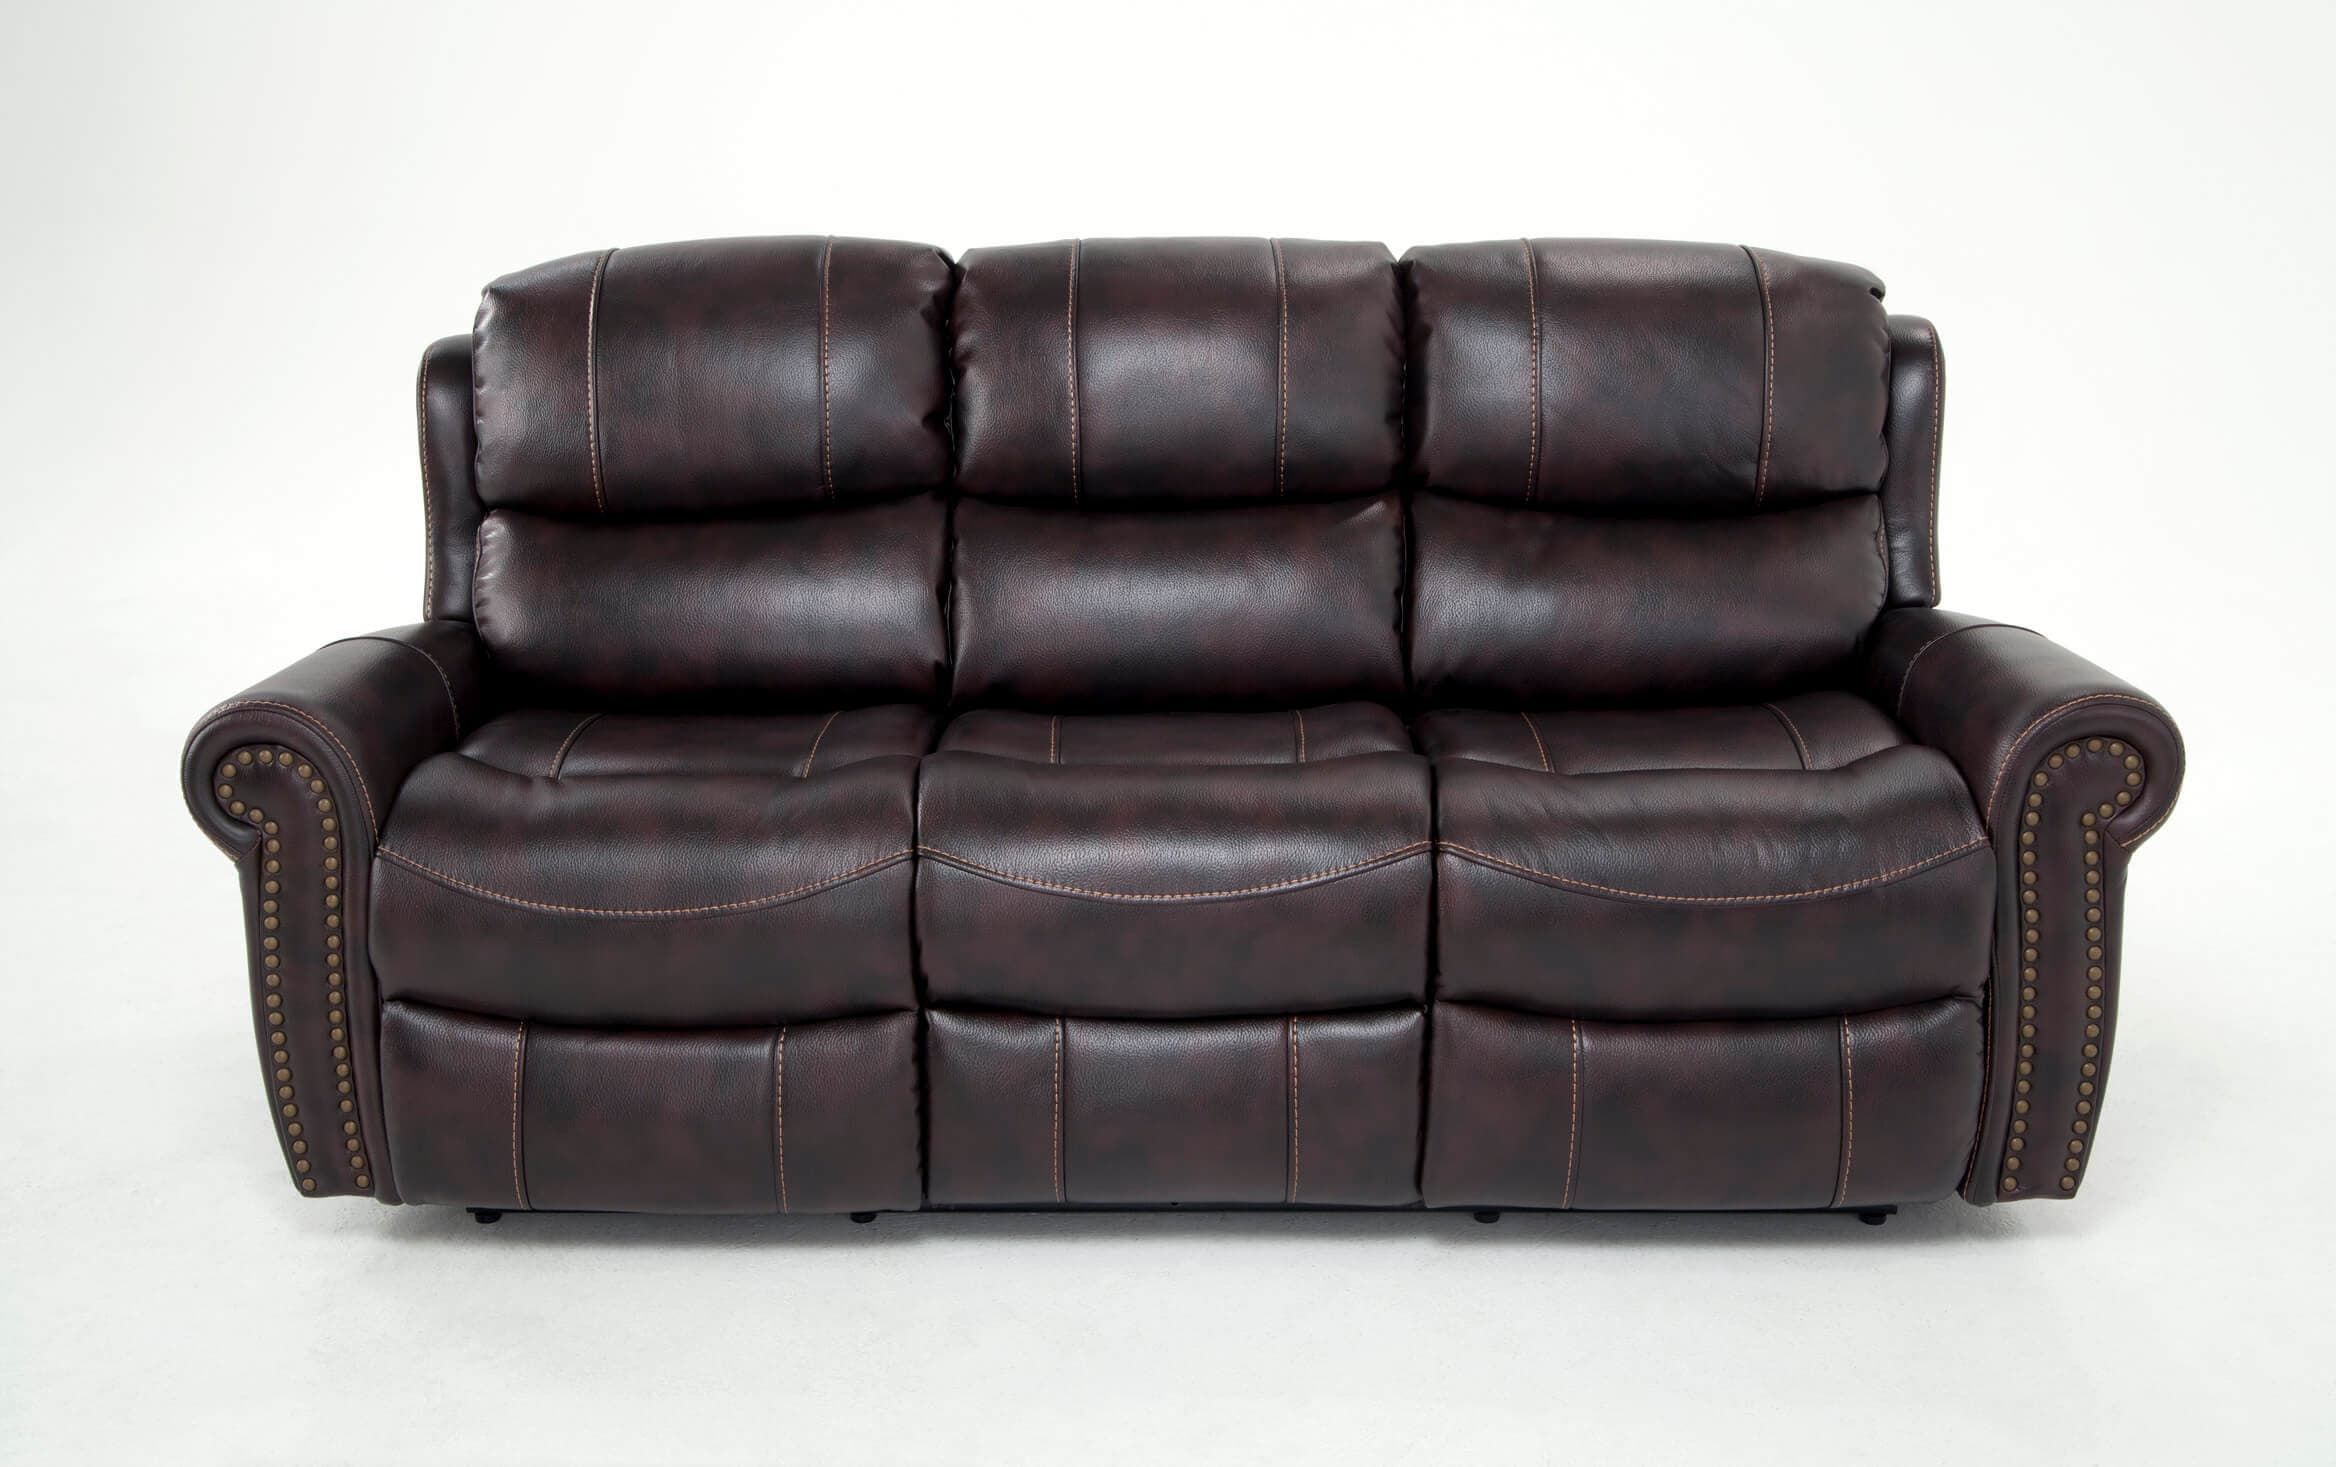 Bobs Furniture Leather Sofa : Trailblazer Gray Leather For Trailblazer Gray Leather Power Reclining Sofas (Photo 2 of 15)